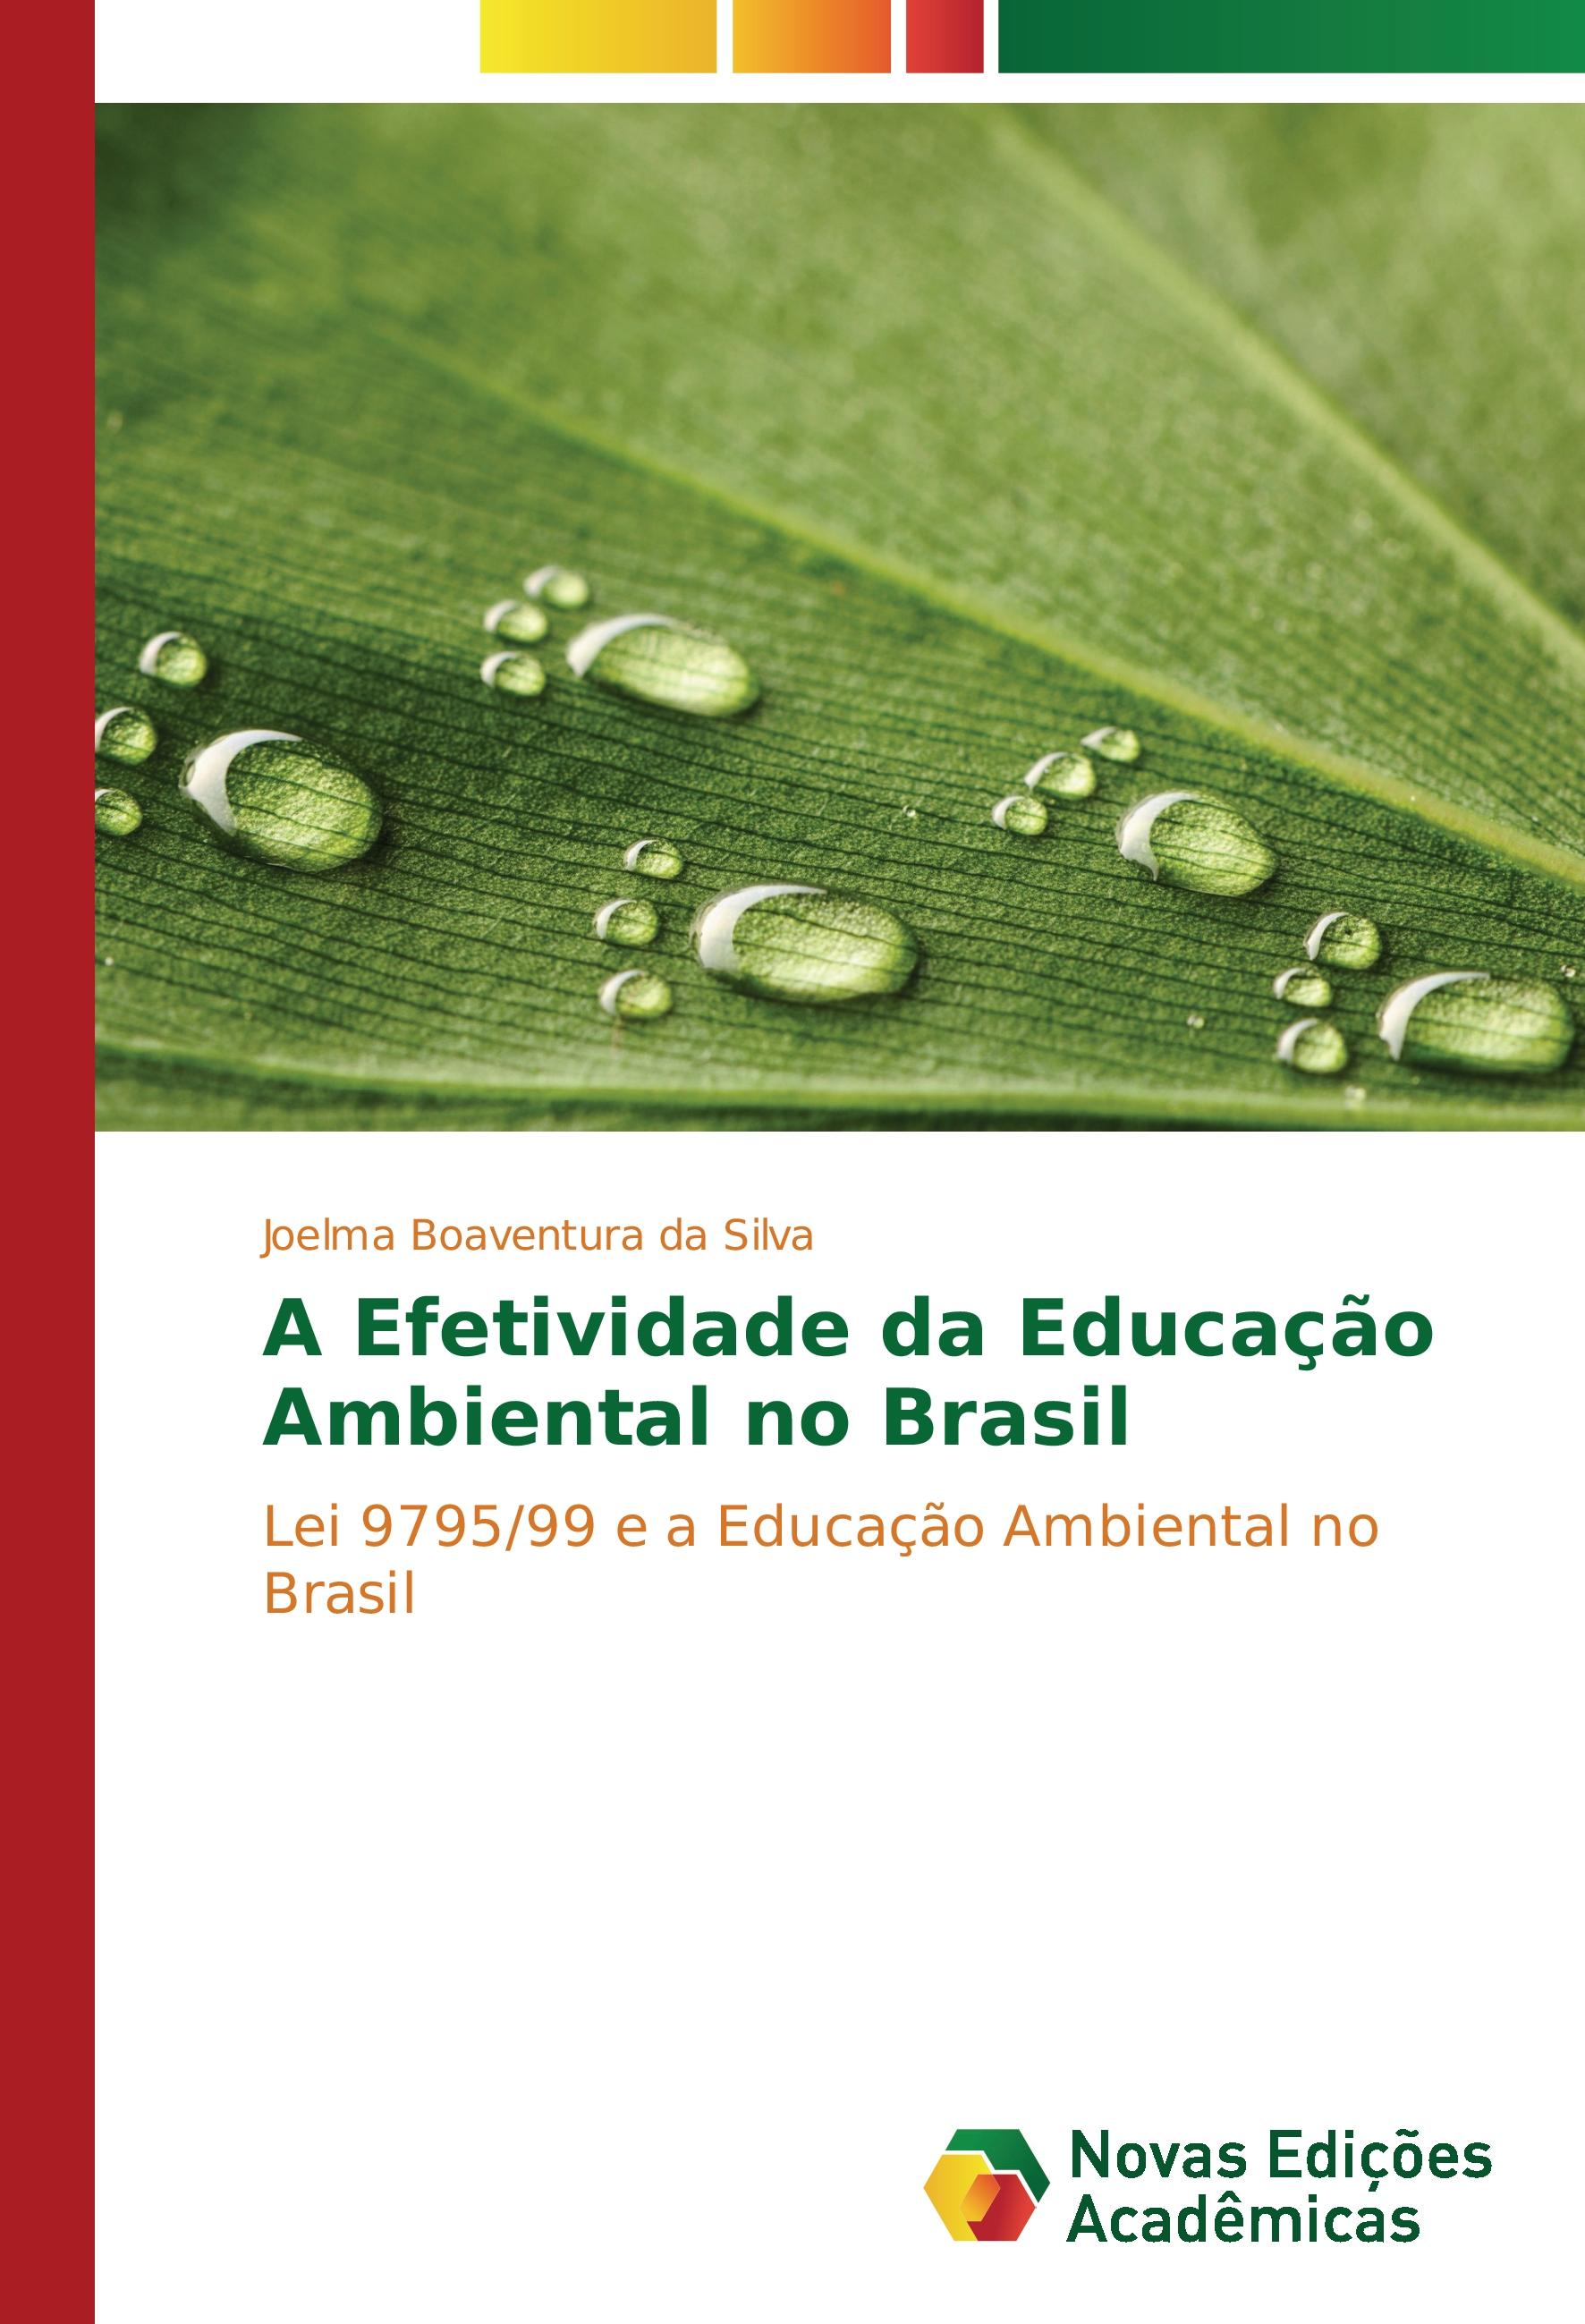 A Efetividade da Educação Ambiental no Brasil - Joelma Boaventura da Silva